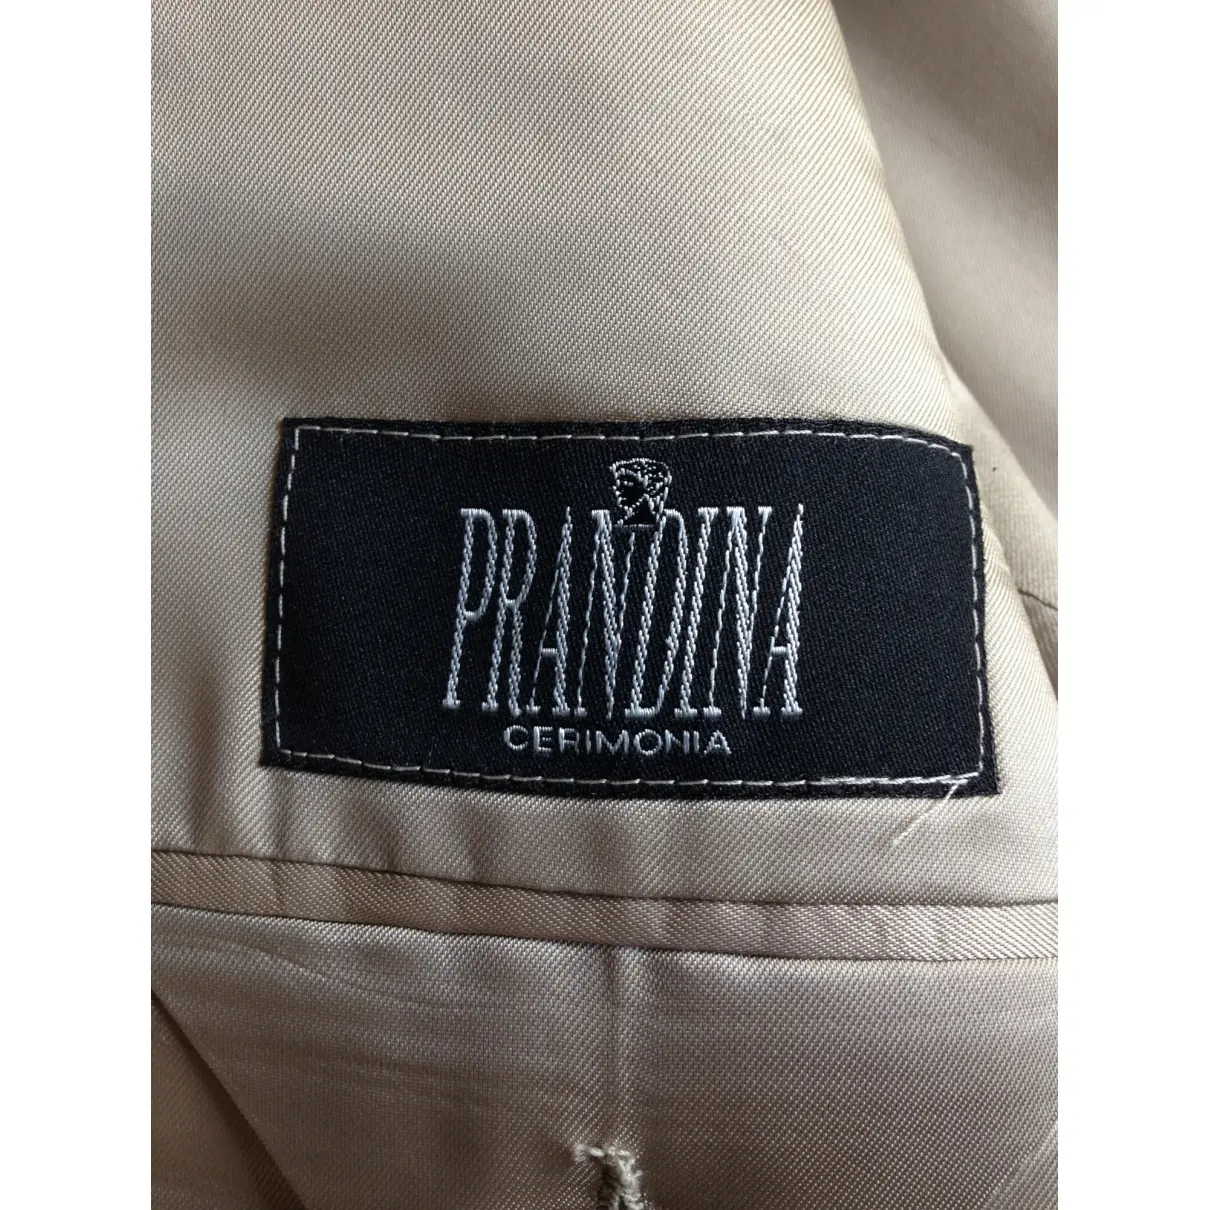 Wool suit Prandina - Vintage